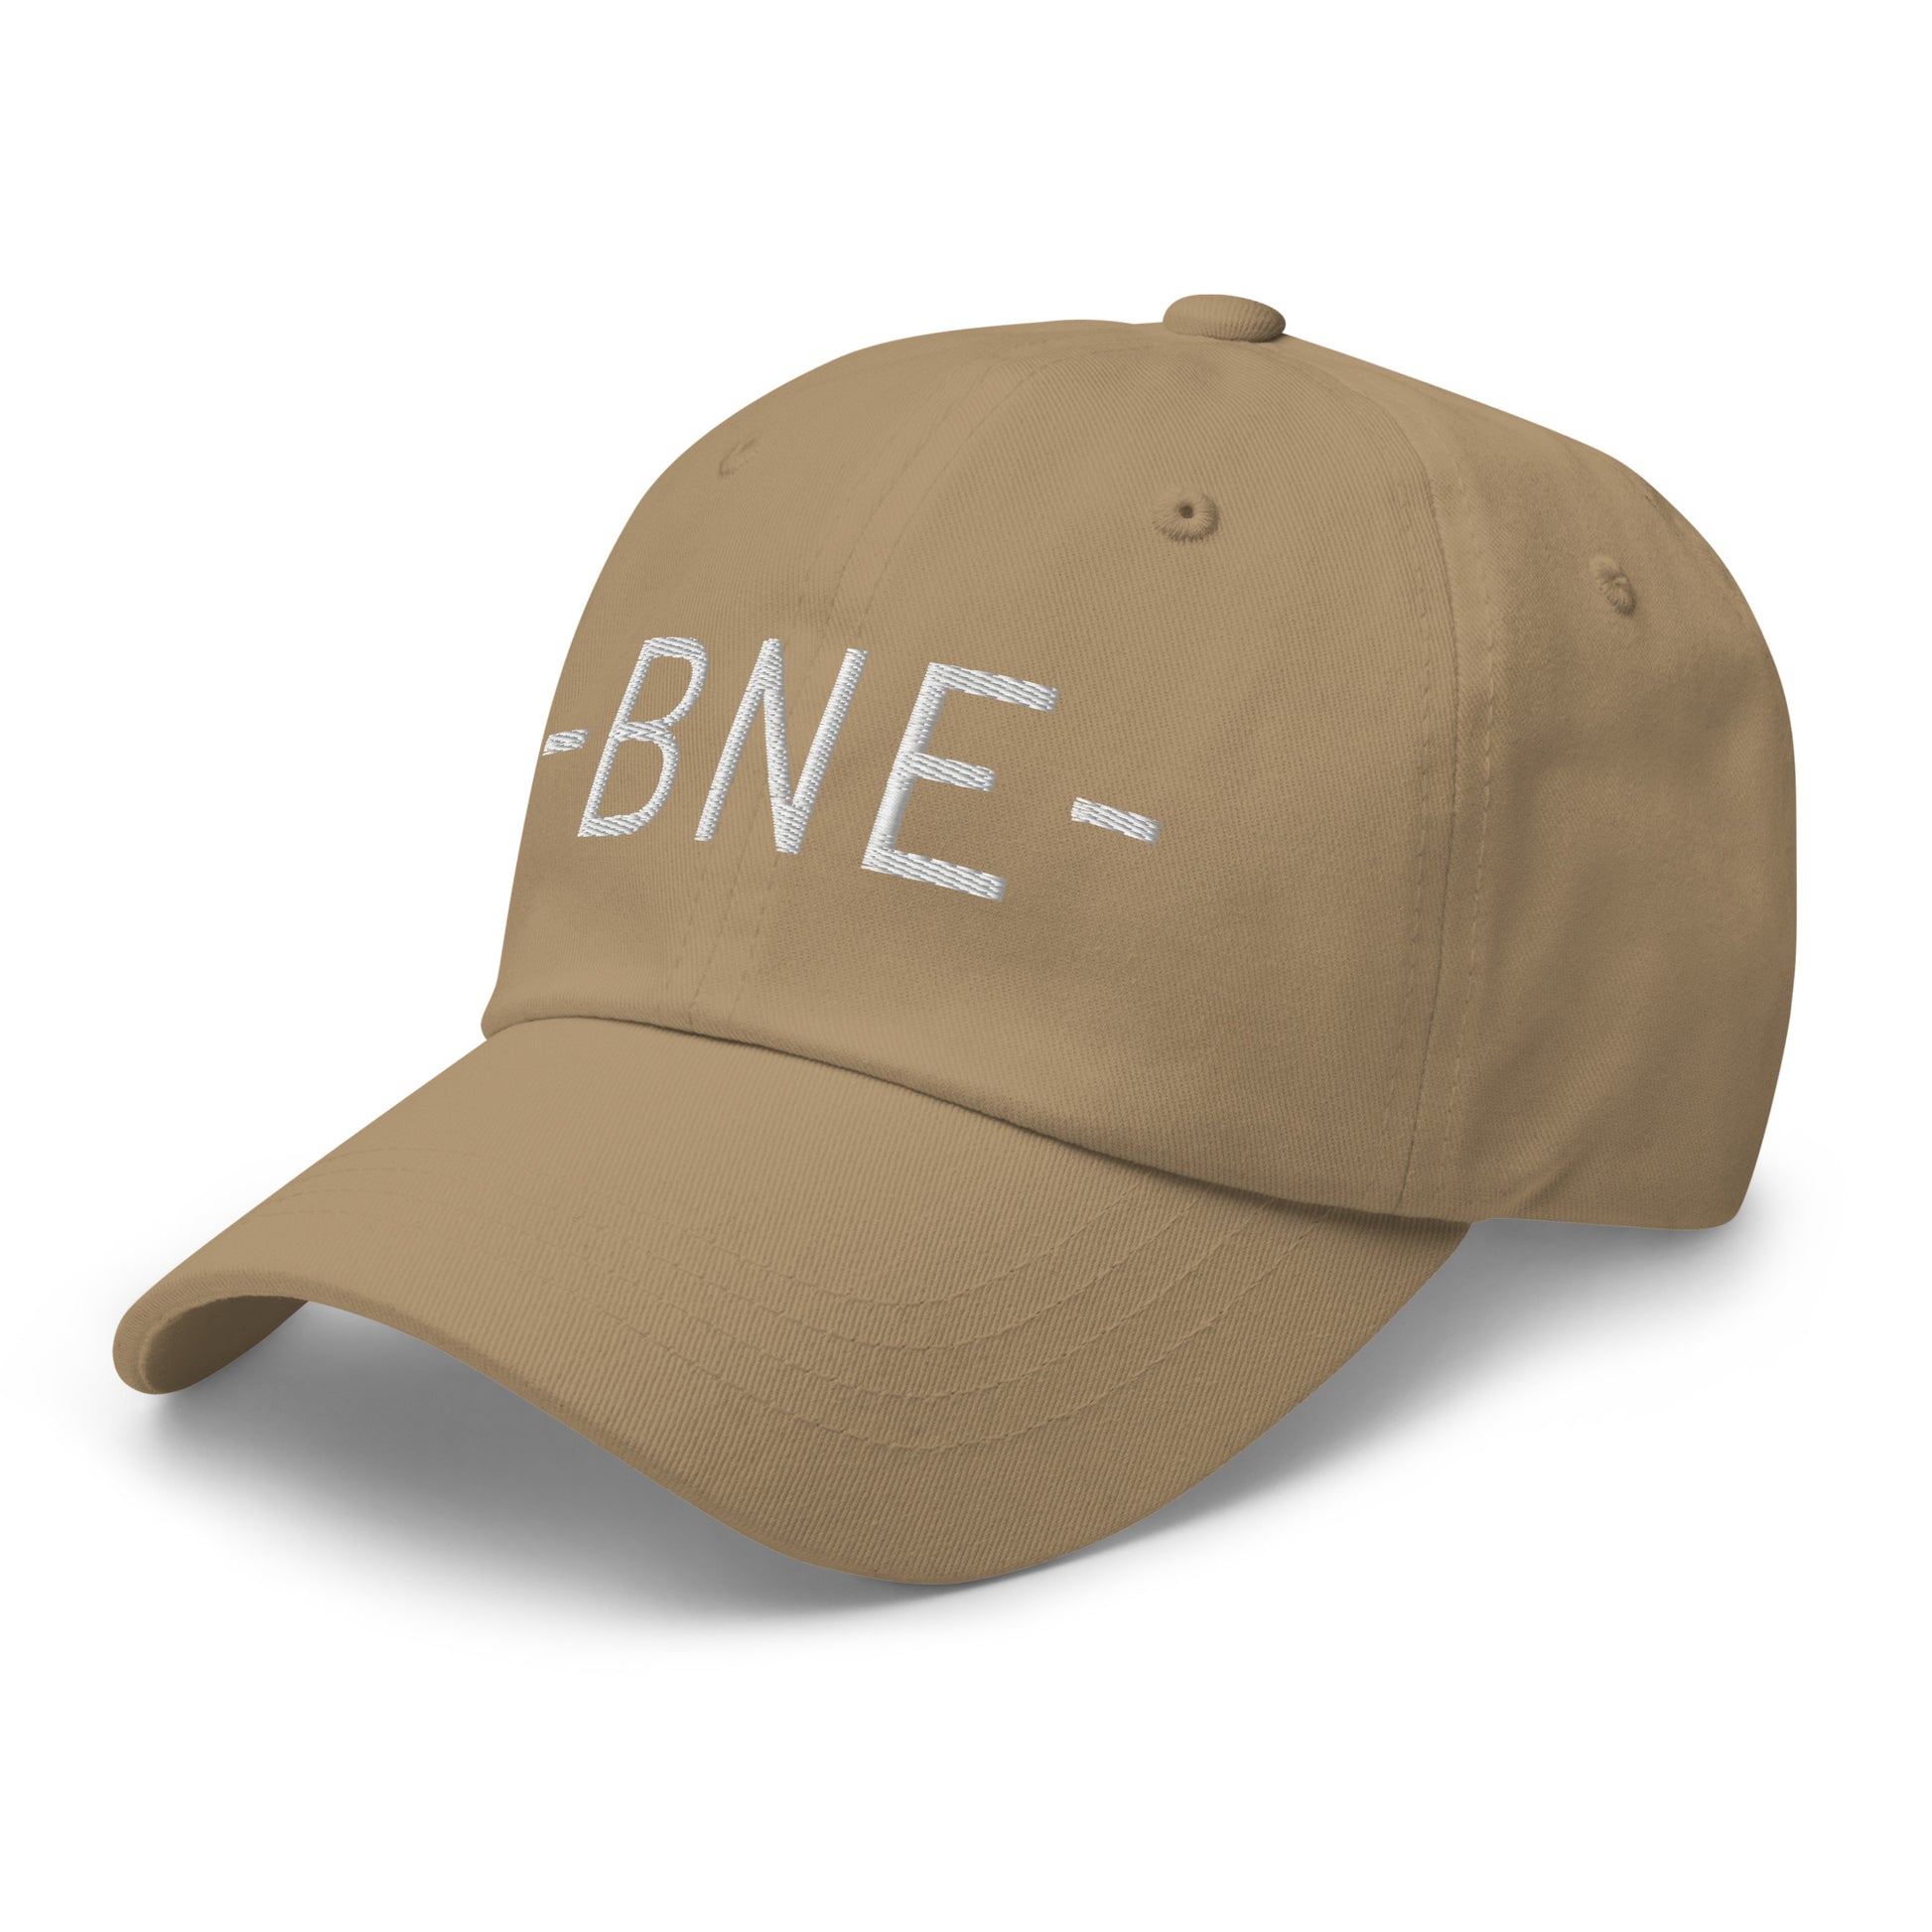 Souvenir Baseball Cap - White • BNE Brisbane • YHM Designs - Image 22